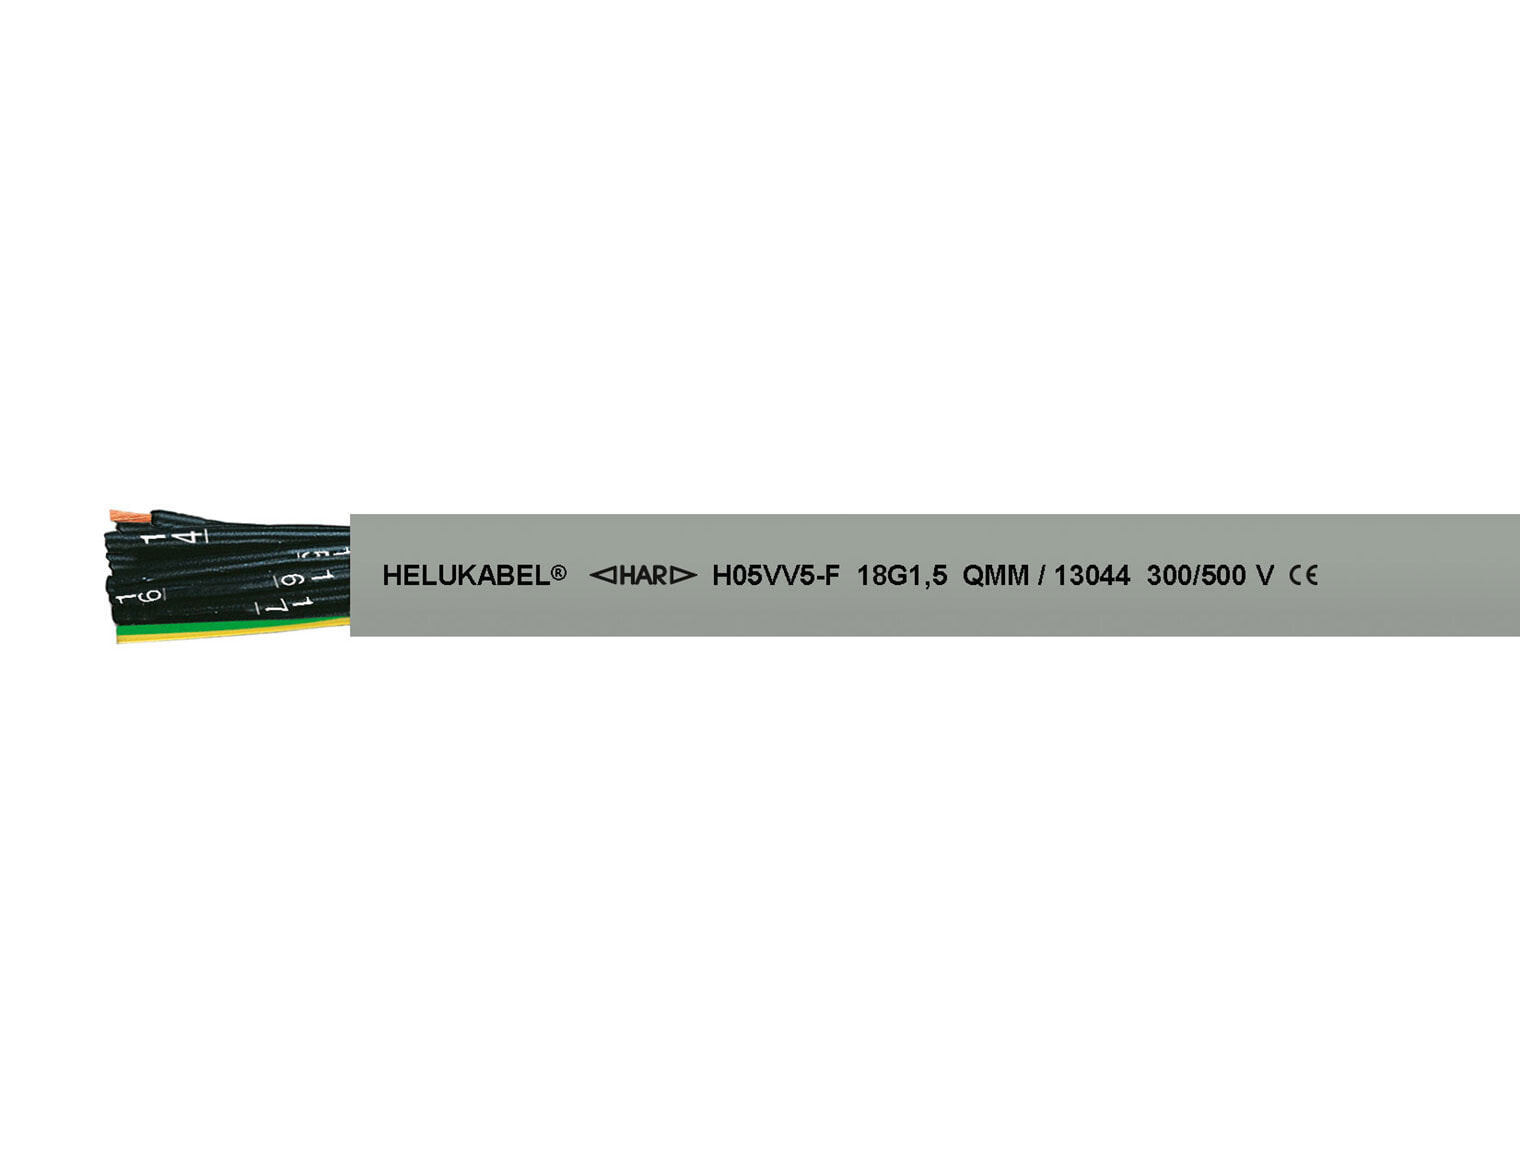 Helukabel H05VV5-F (NYSLYÖ-JZ) Steuerleitung 3 G 1 mm² Grau 13025 100 m